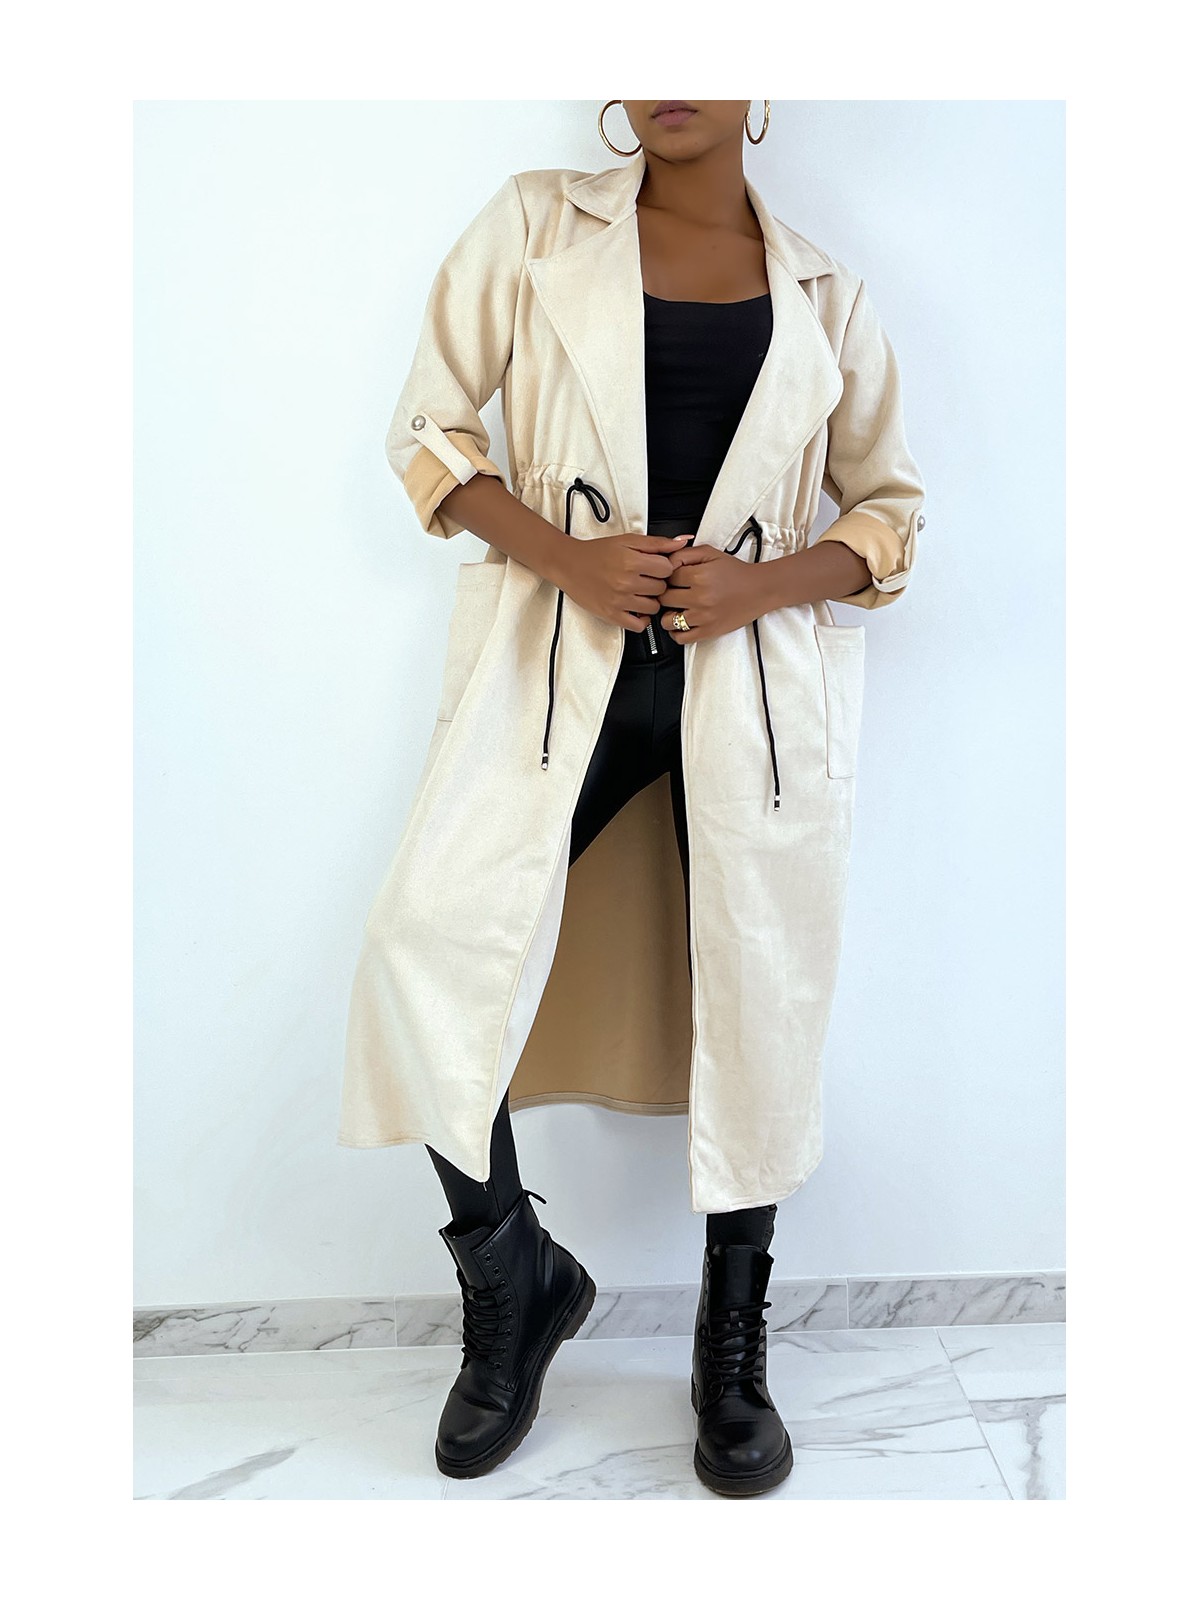 Manteau trench en suédine beige ajustable à la taille - 6